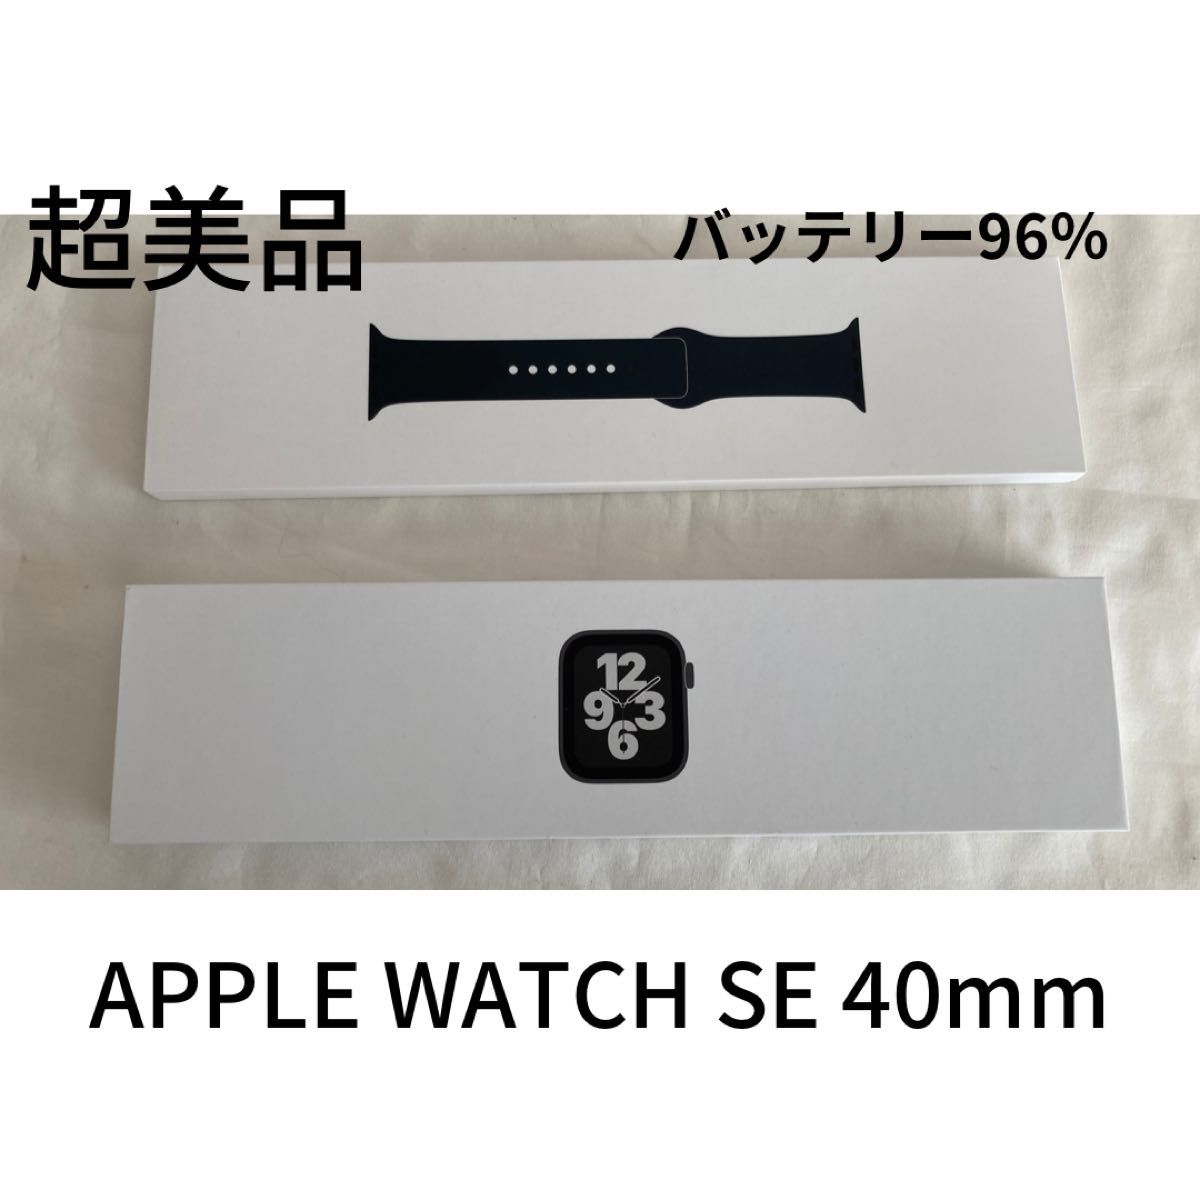 Apple Watch SE GPSモデル 40mm スペースグレイ アルミニウムモデル 